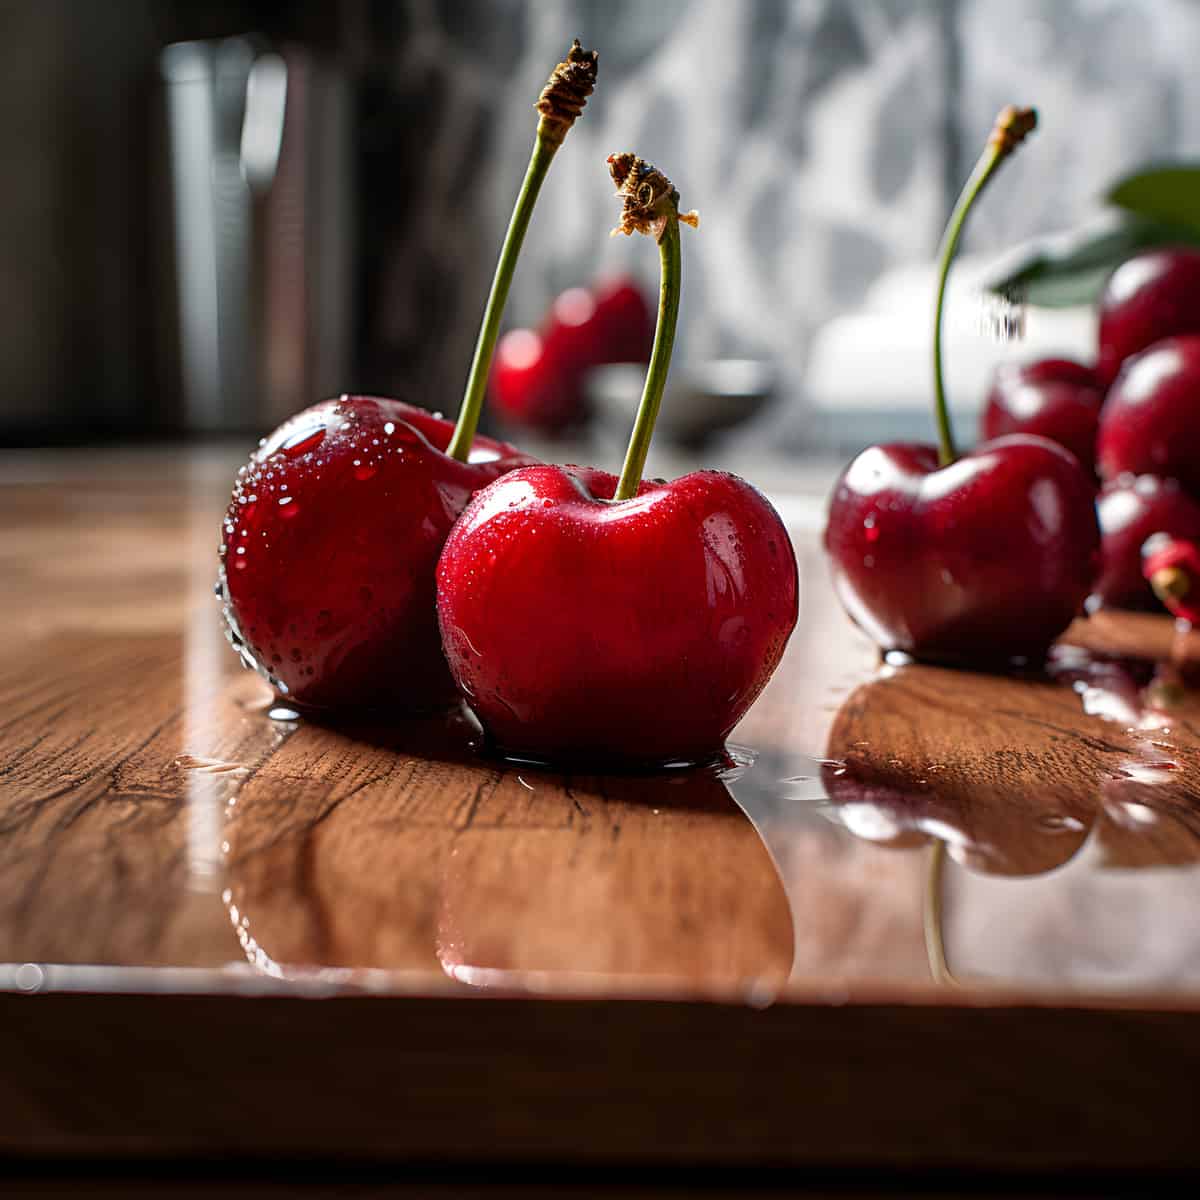 Wild Cherries on a kitchen counter